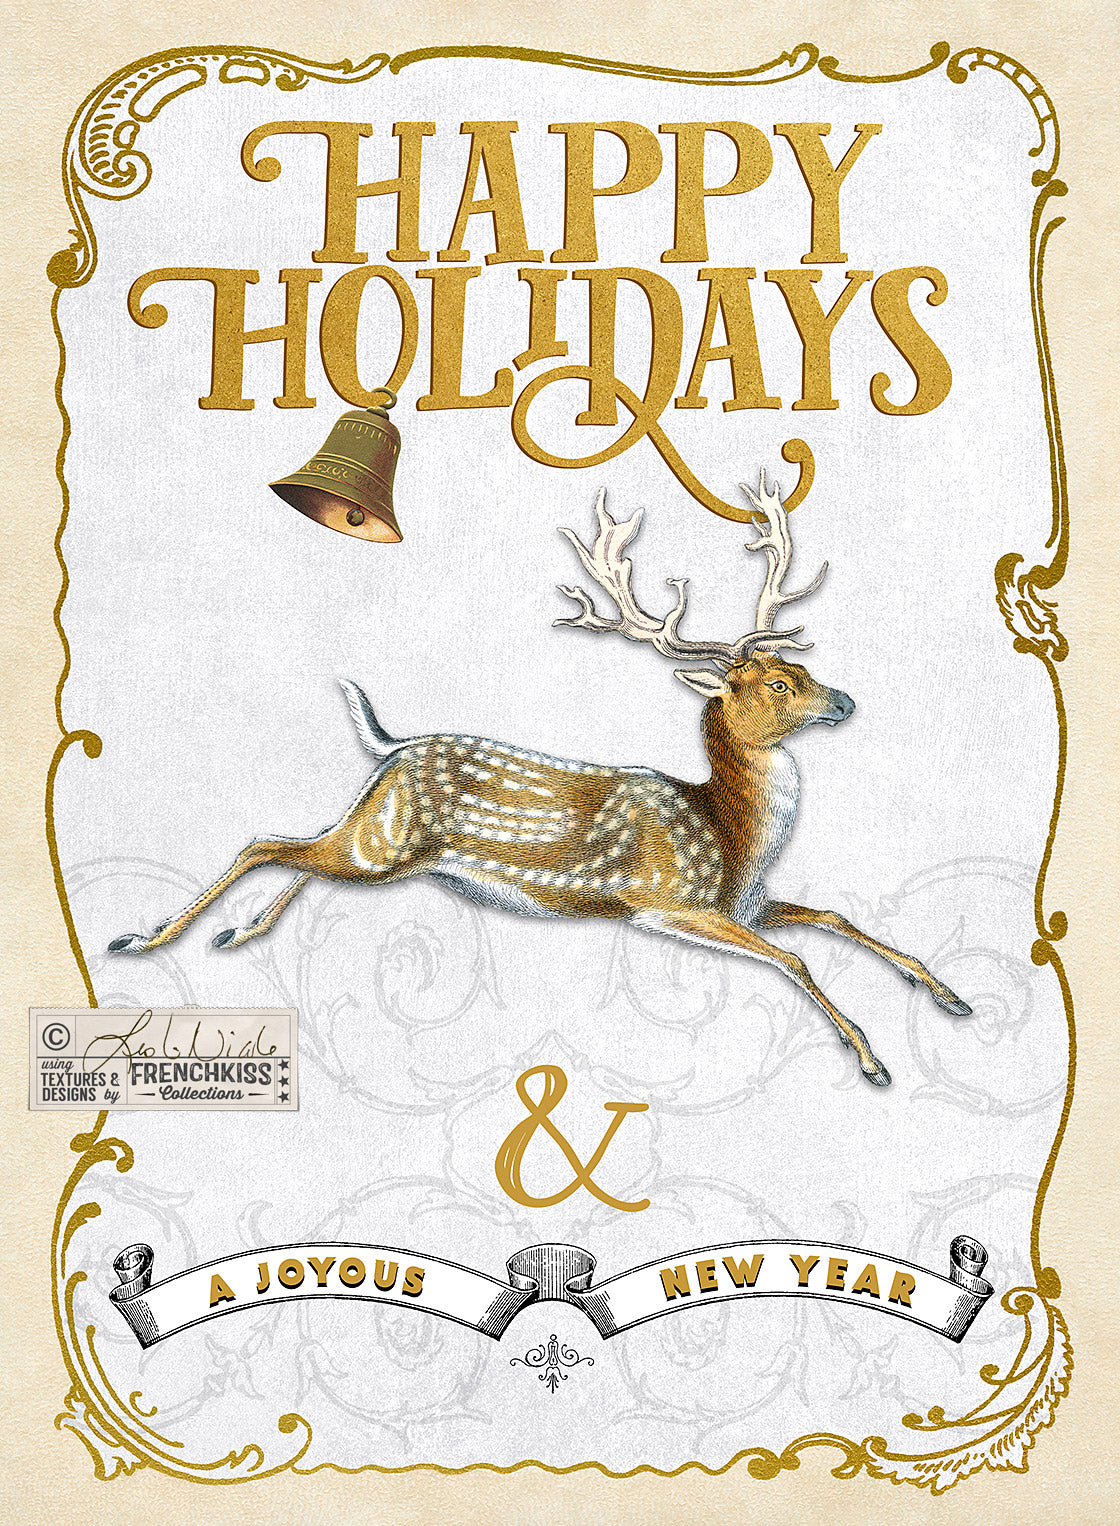 Christmas card design using a vintage deer illustration and vintage frame. 